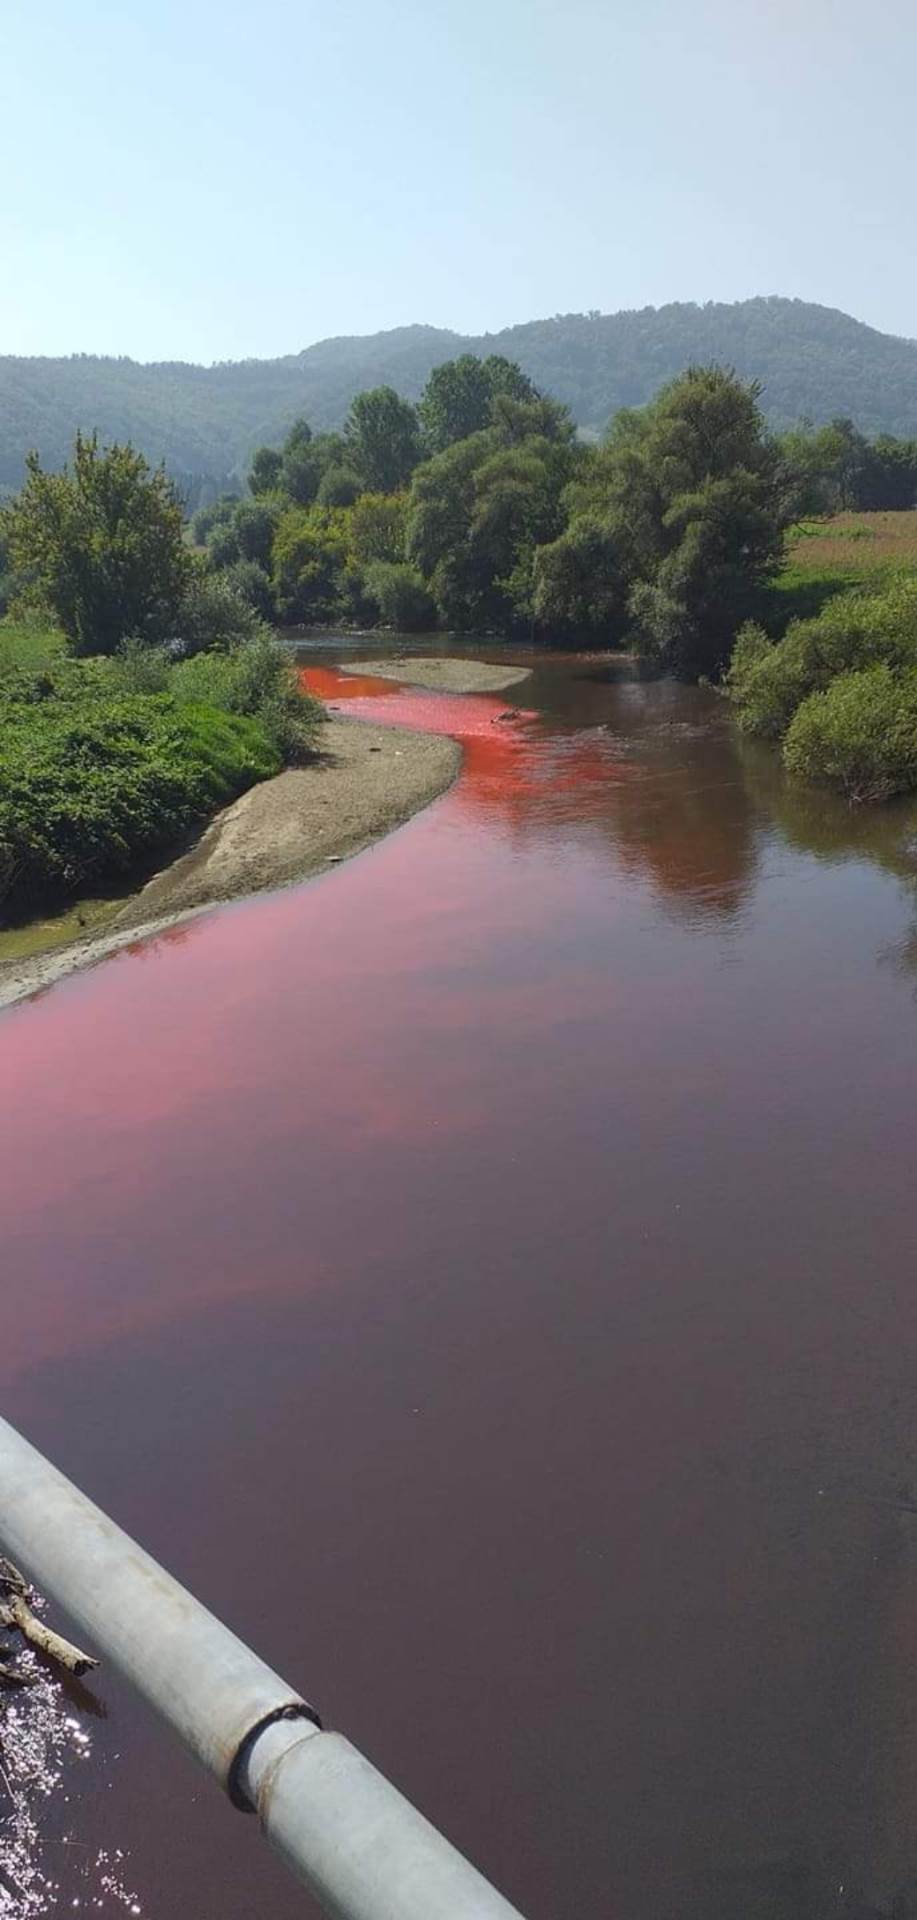  Reka Bjelica crvena tečnost 